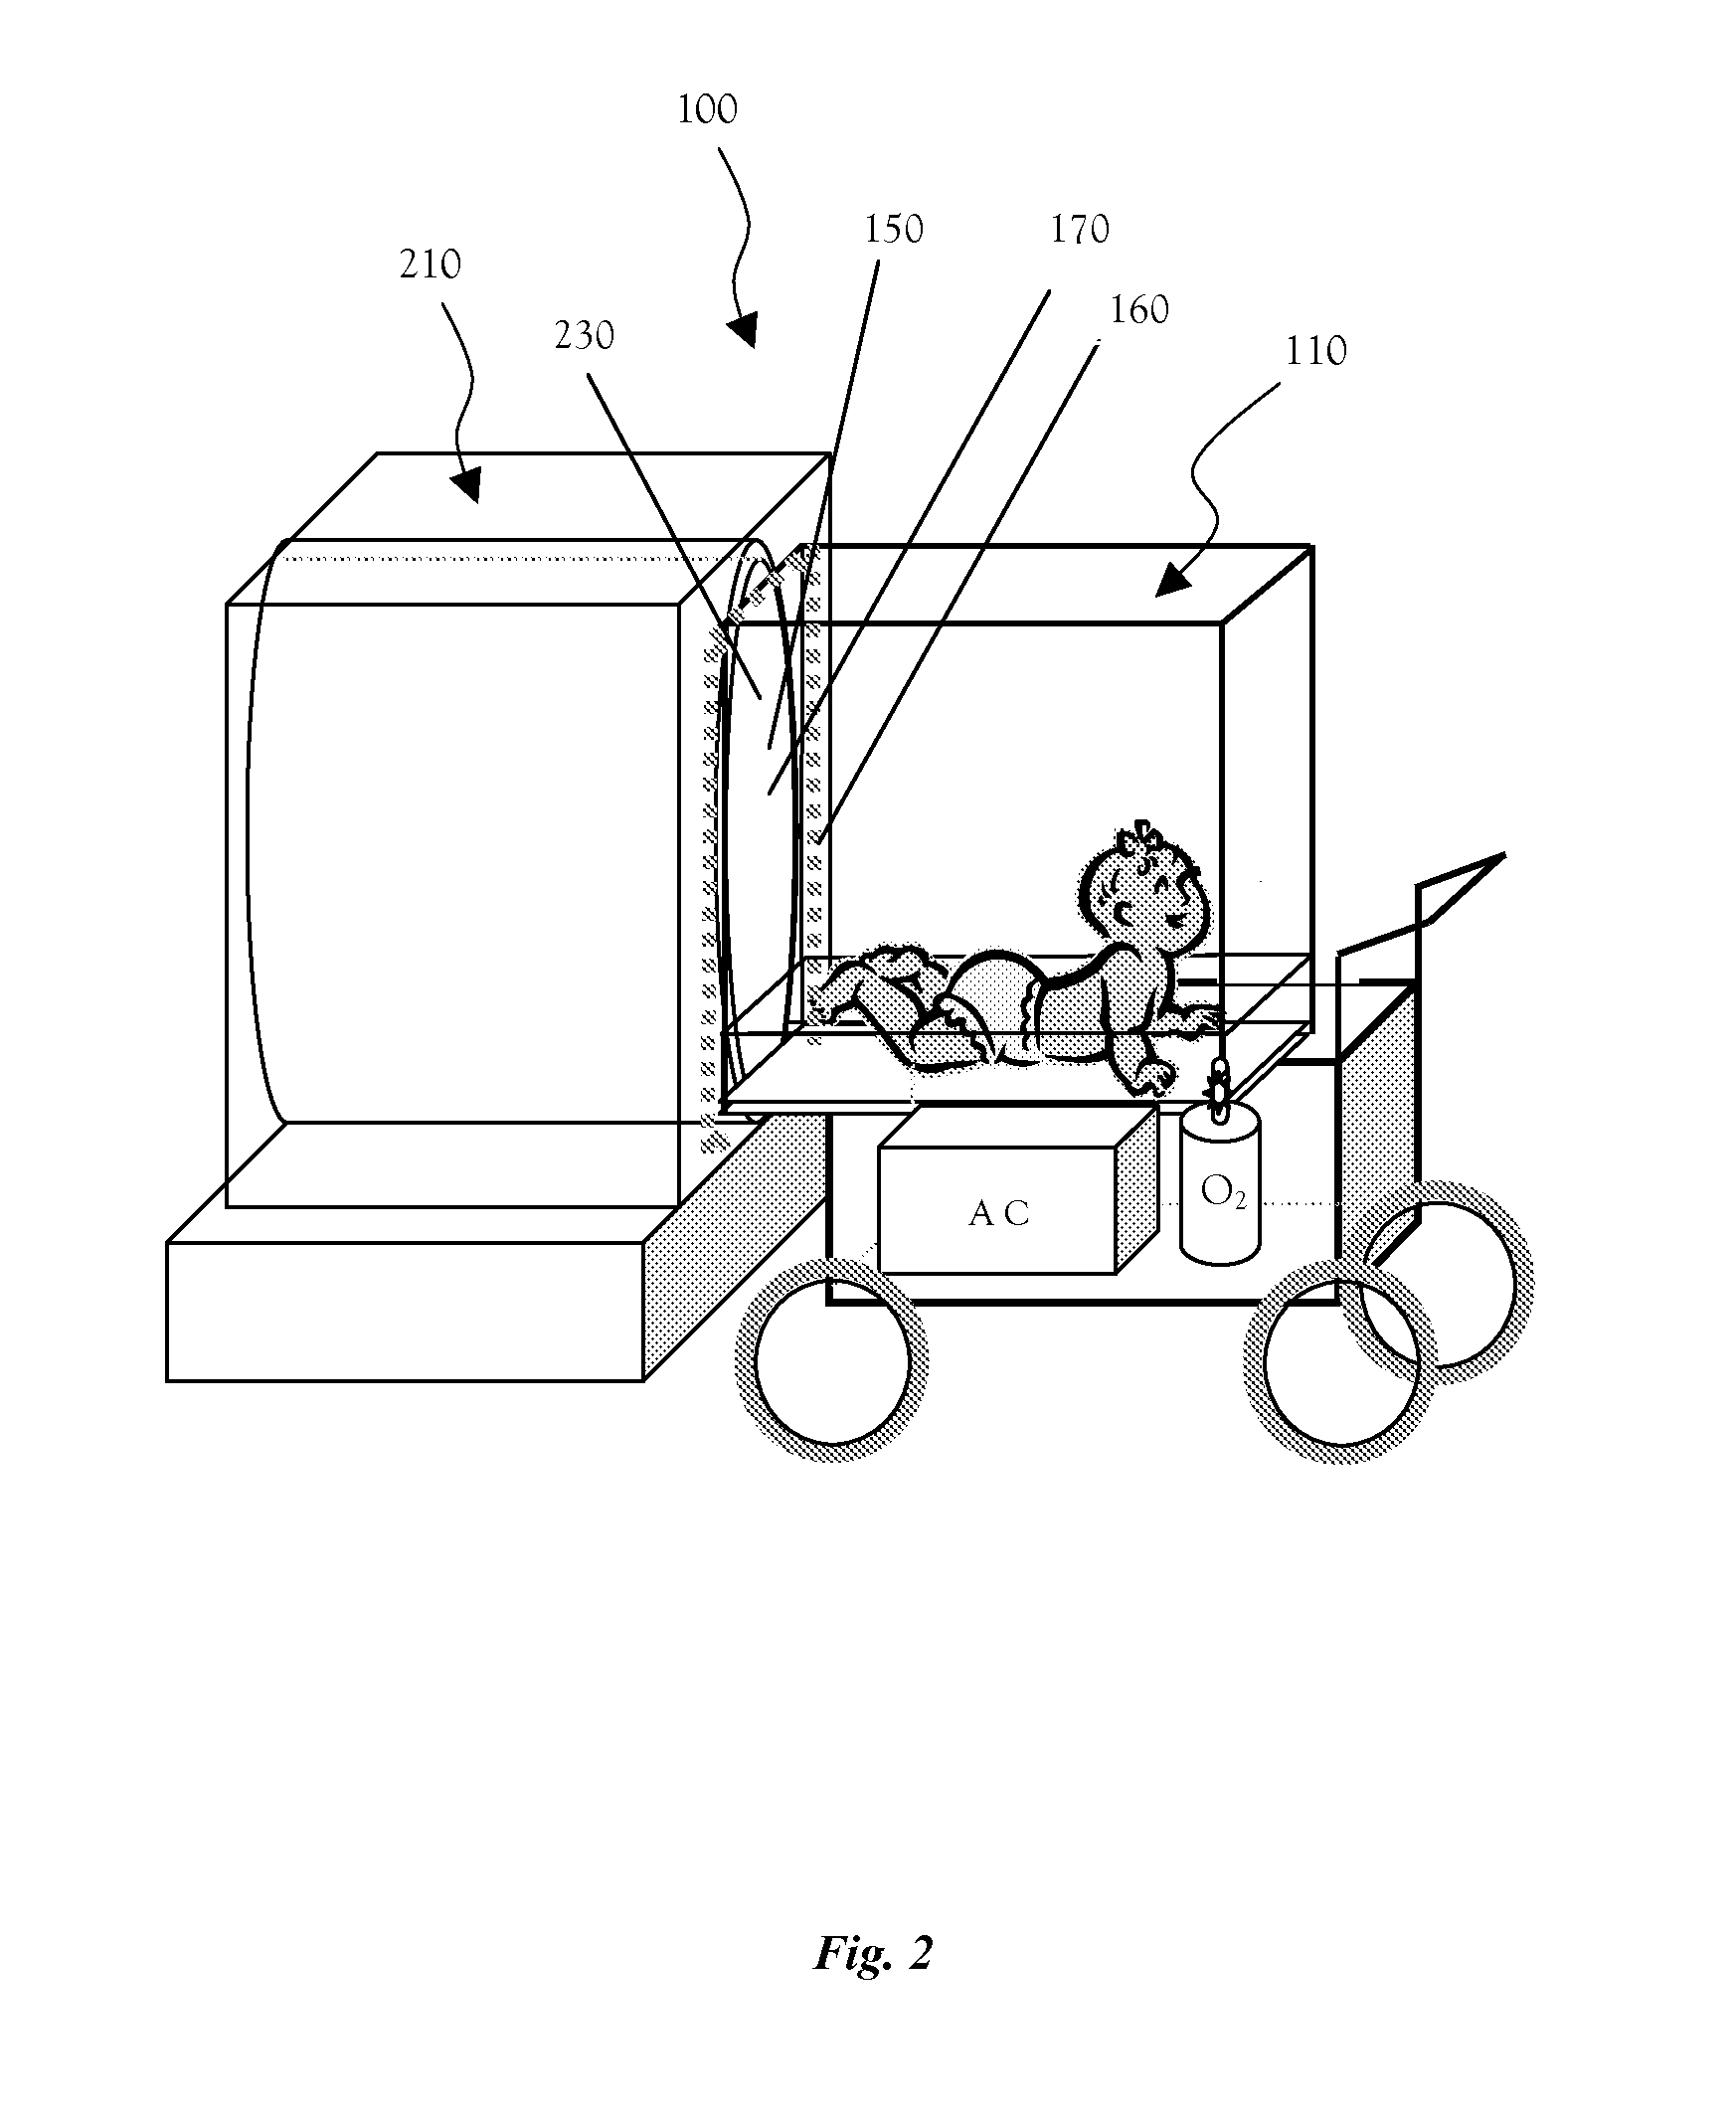 Neonate's incubator and MRI docking-station